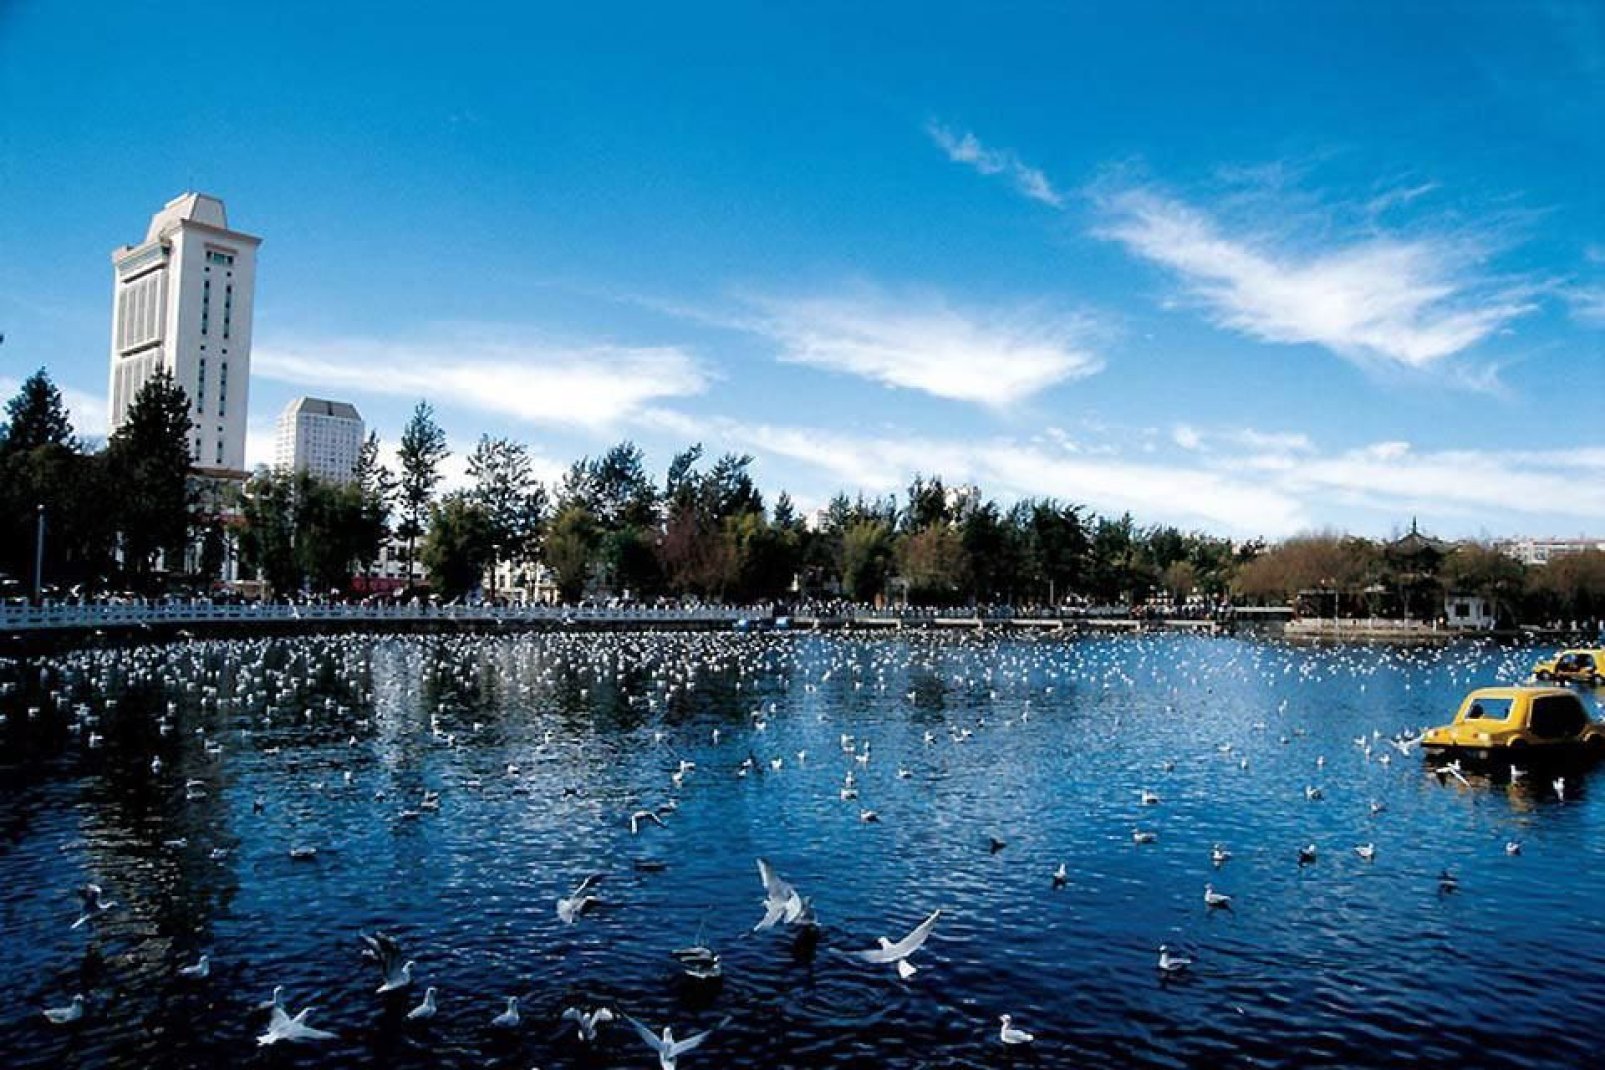 Il lago è situato in un parco nel centro della città. È rinomato per accogliere molti uccelli migratori.